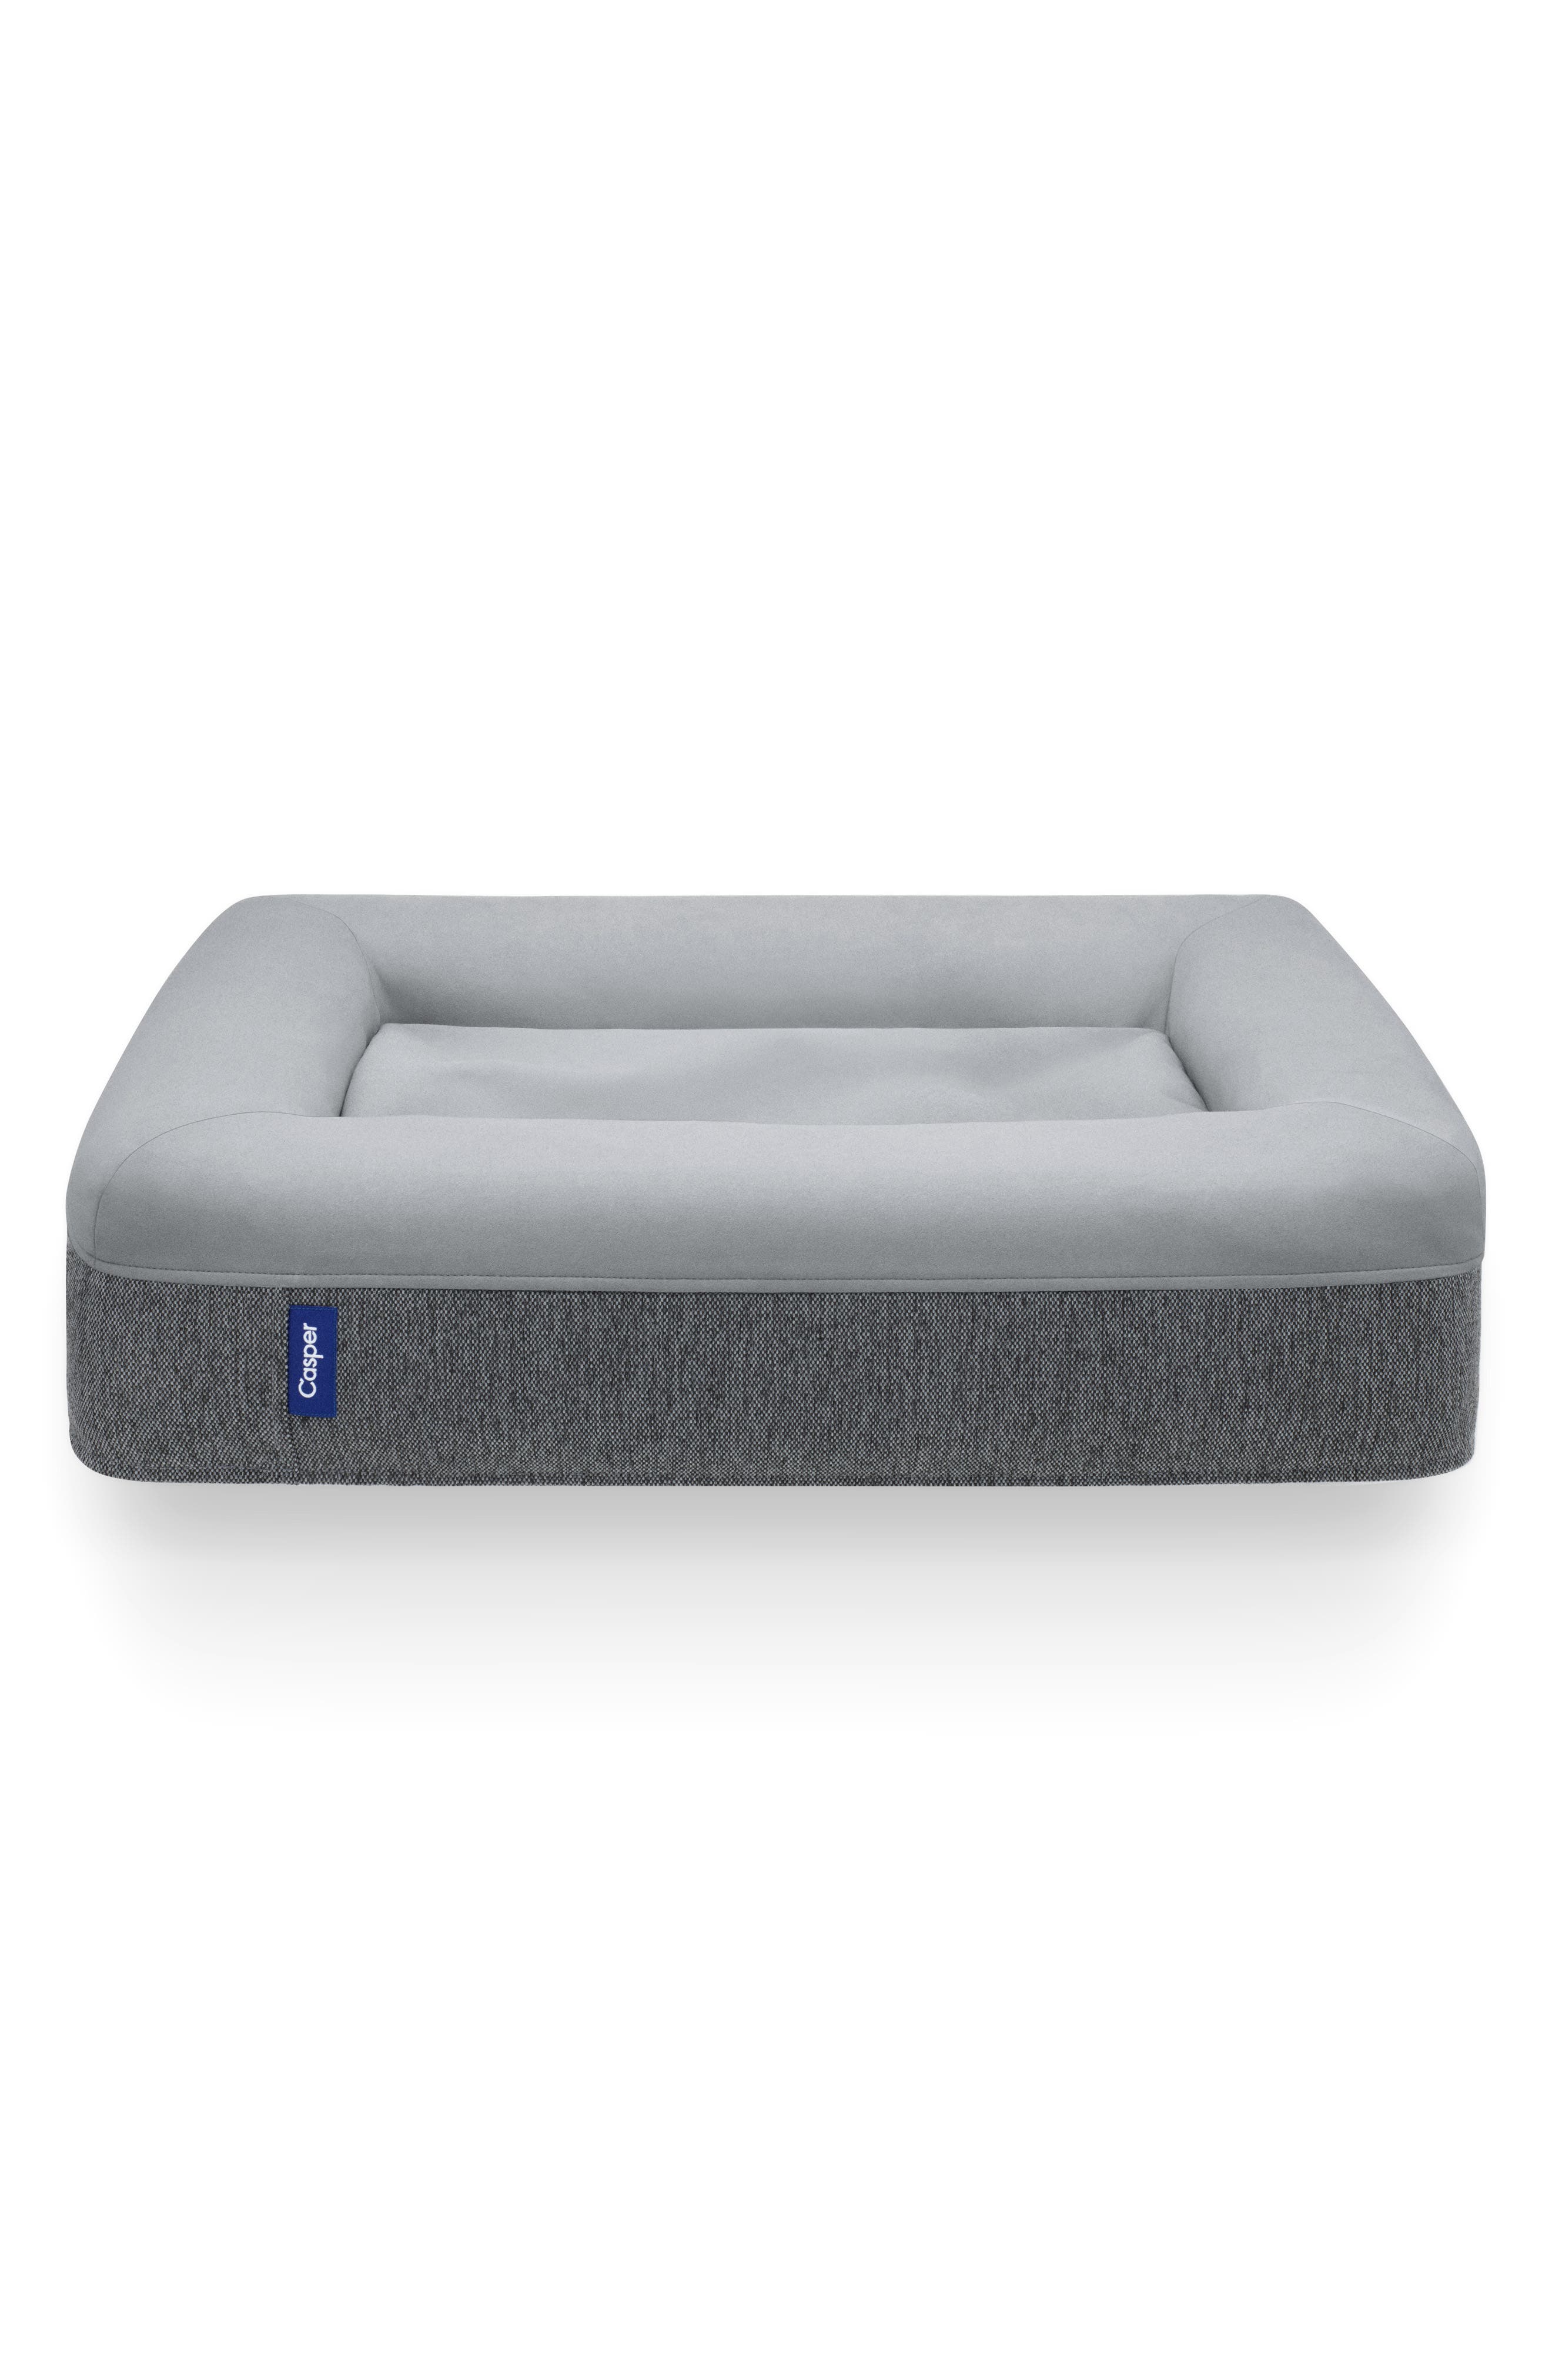 Casper Dog Bed, Size Small - Grey